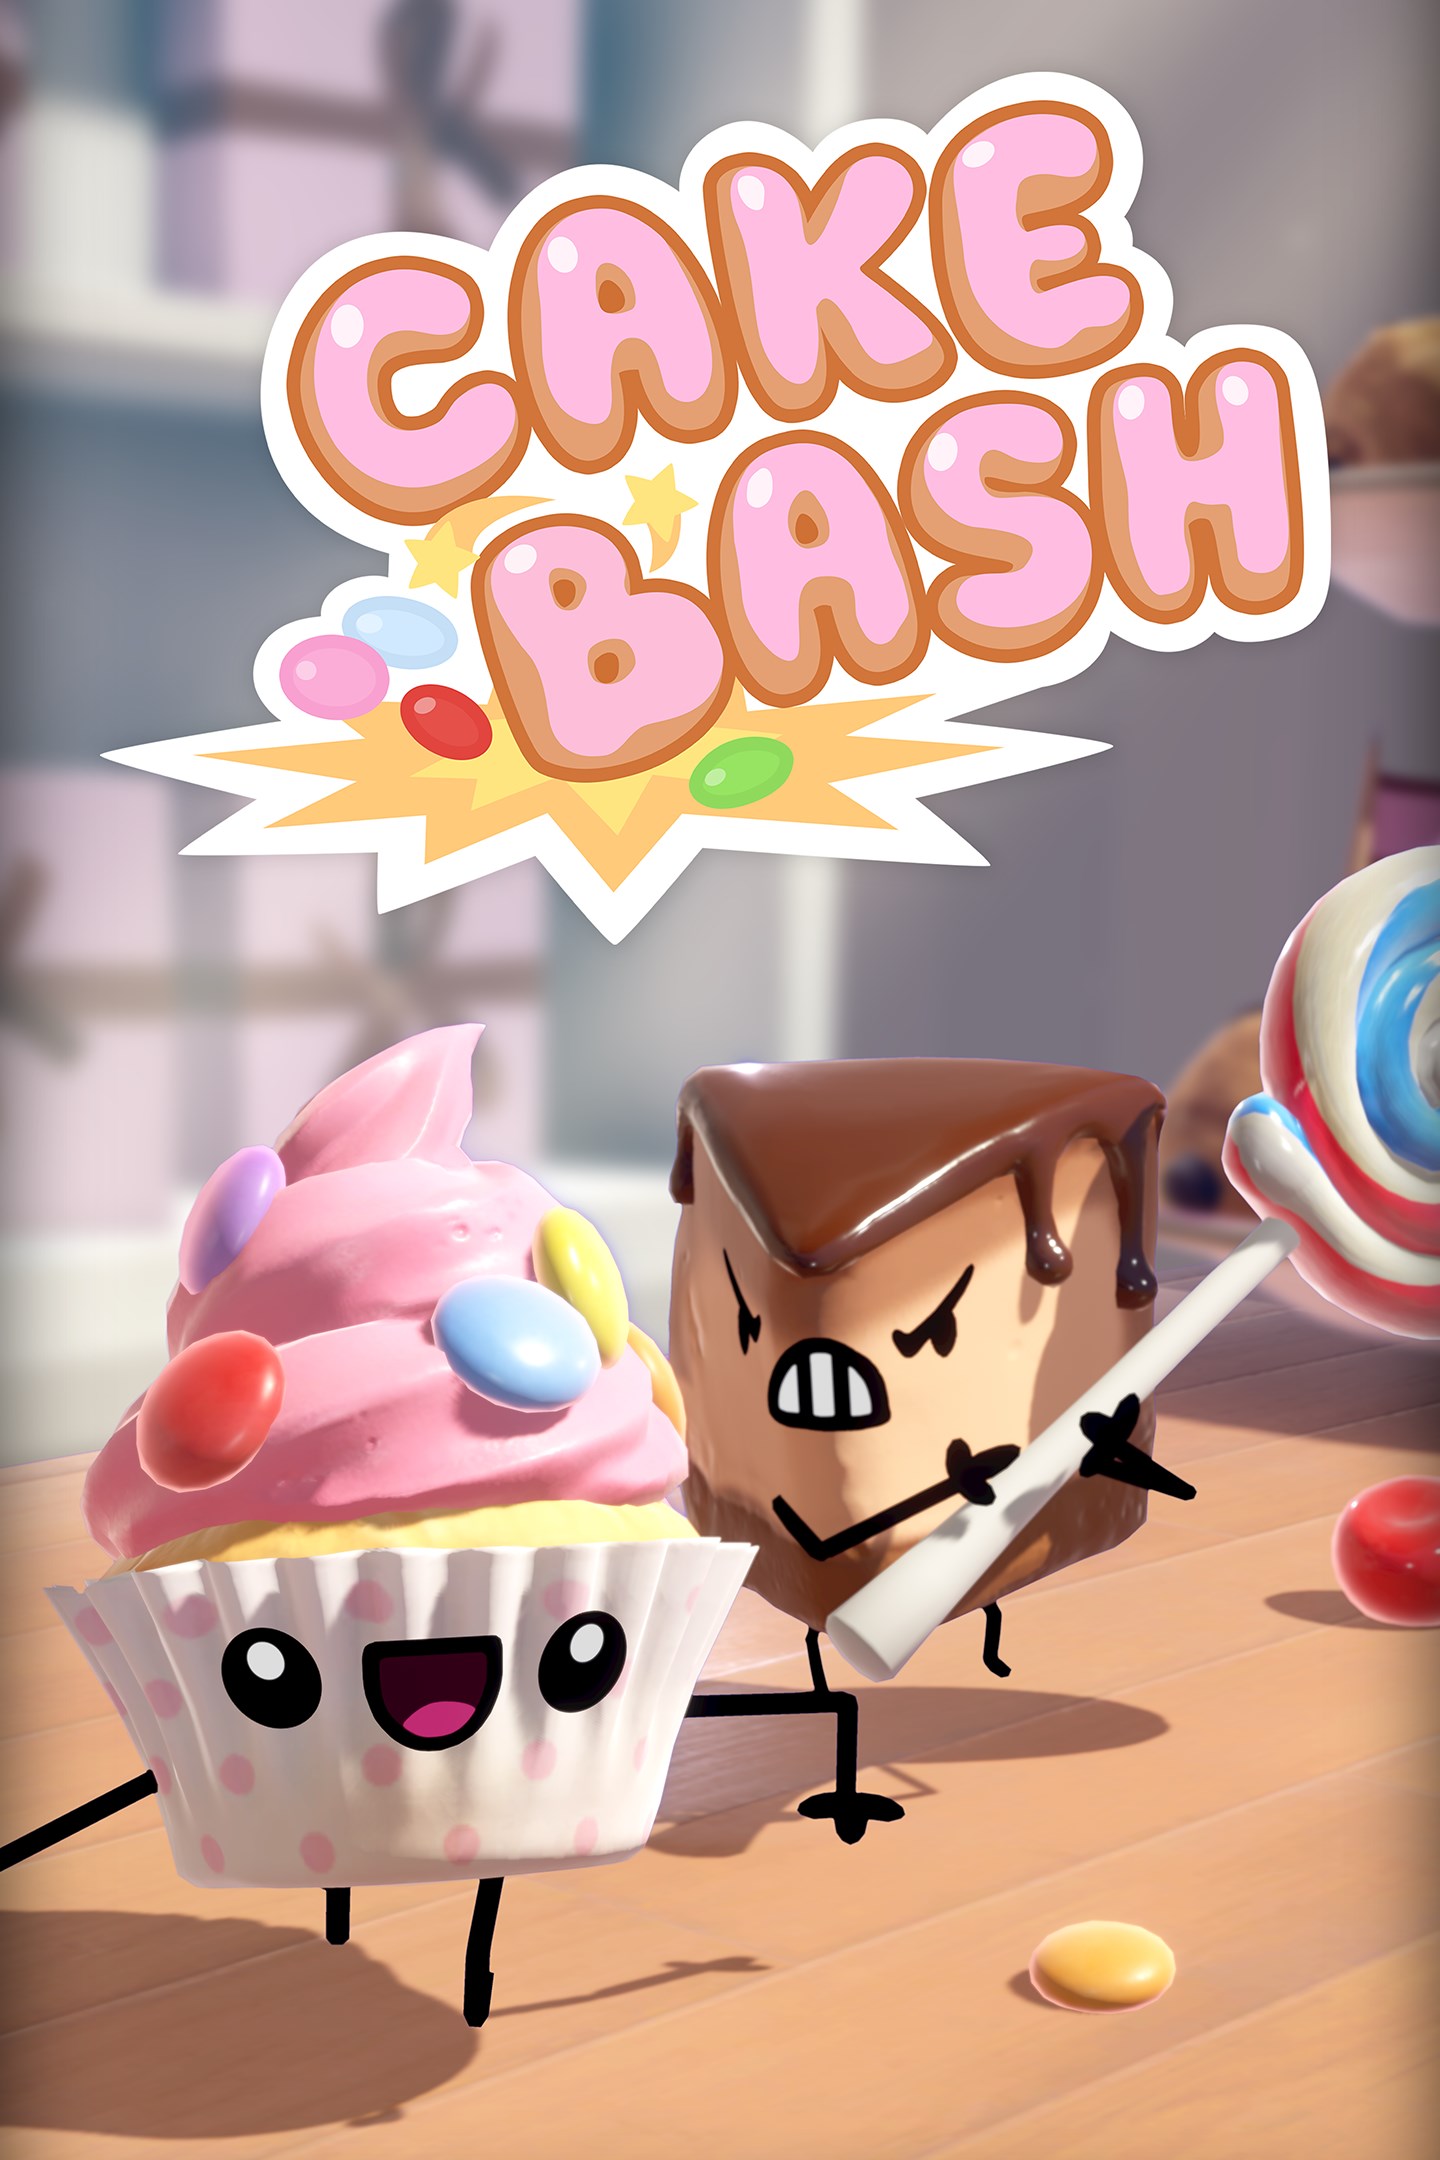 Incontra le torte di Cake Bash, in arrivo su Xbox One il 15 ottobre